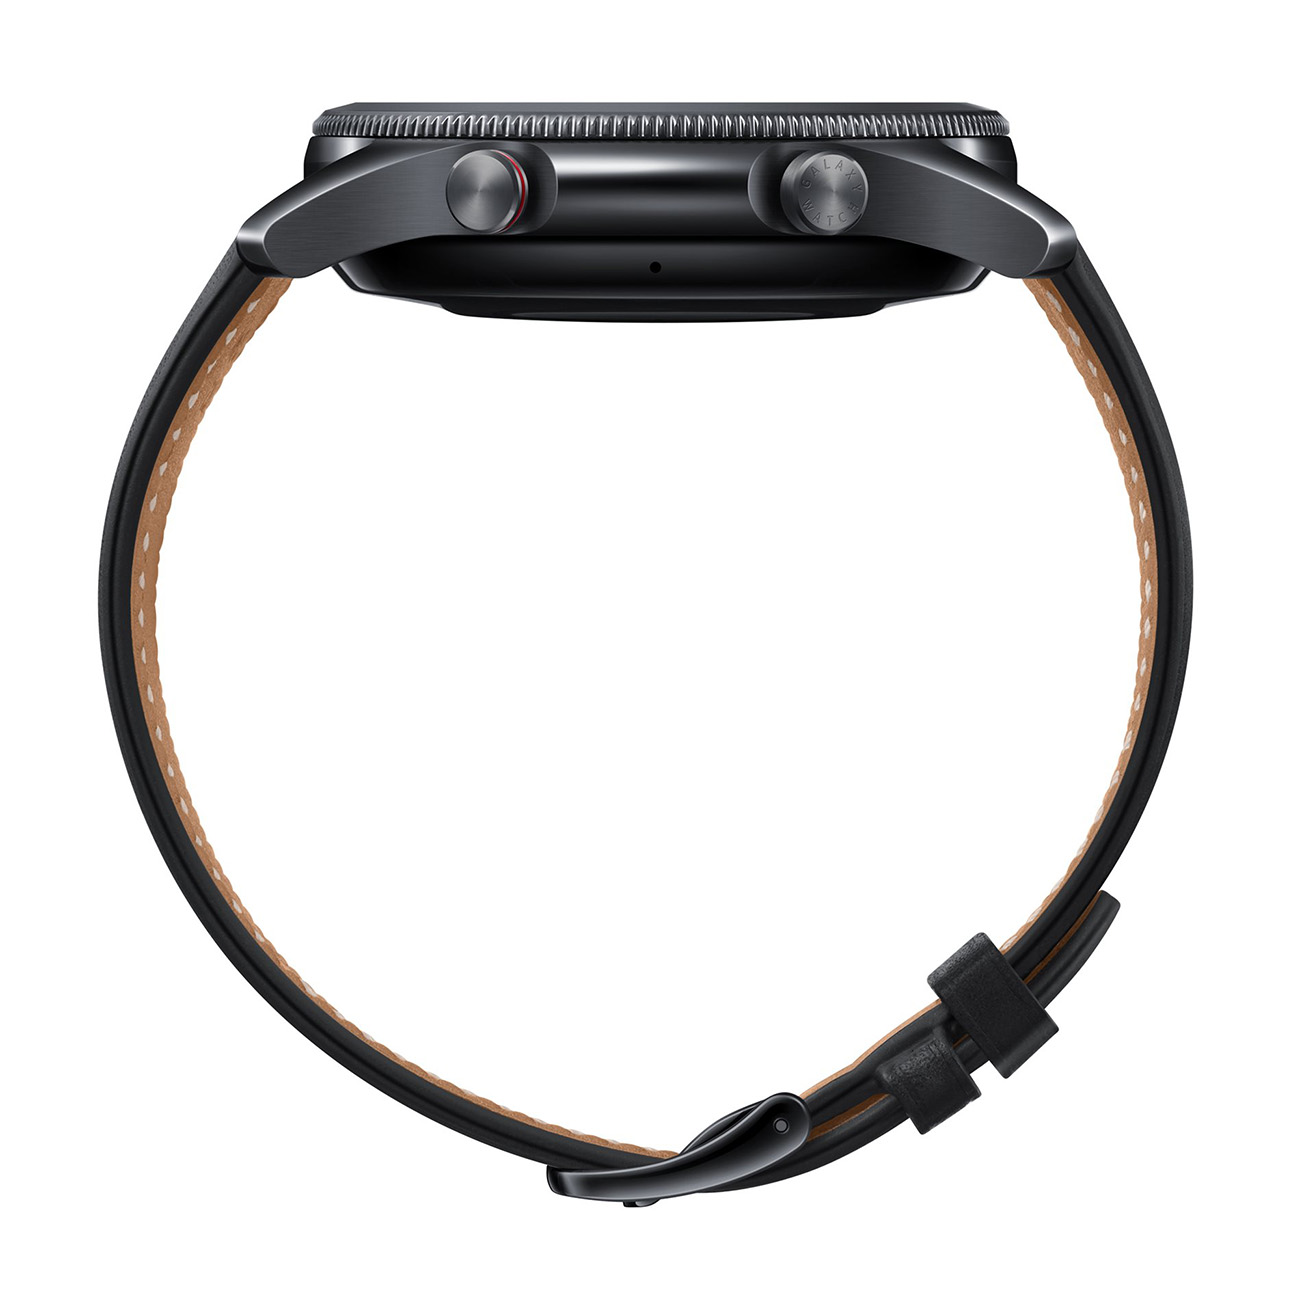 205 Watch Smartwatch Größe - Edelstahl 3 (145 Echtleder mm), SAMSUNG M/L schwarz Galaxy Armband,